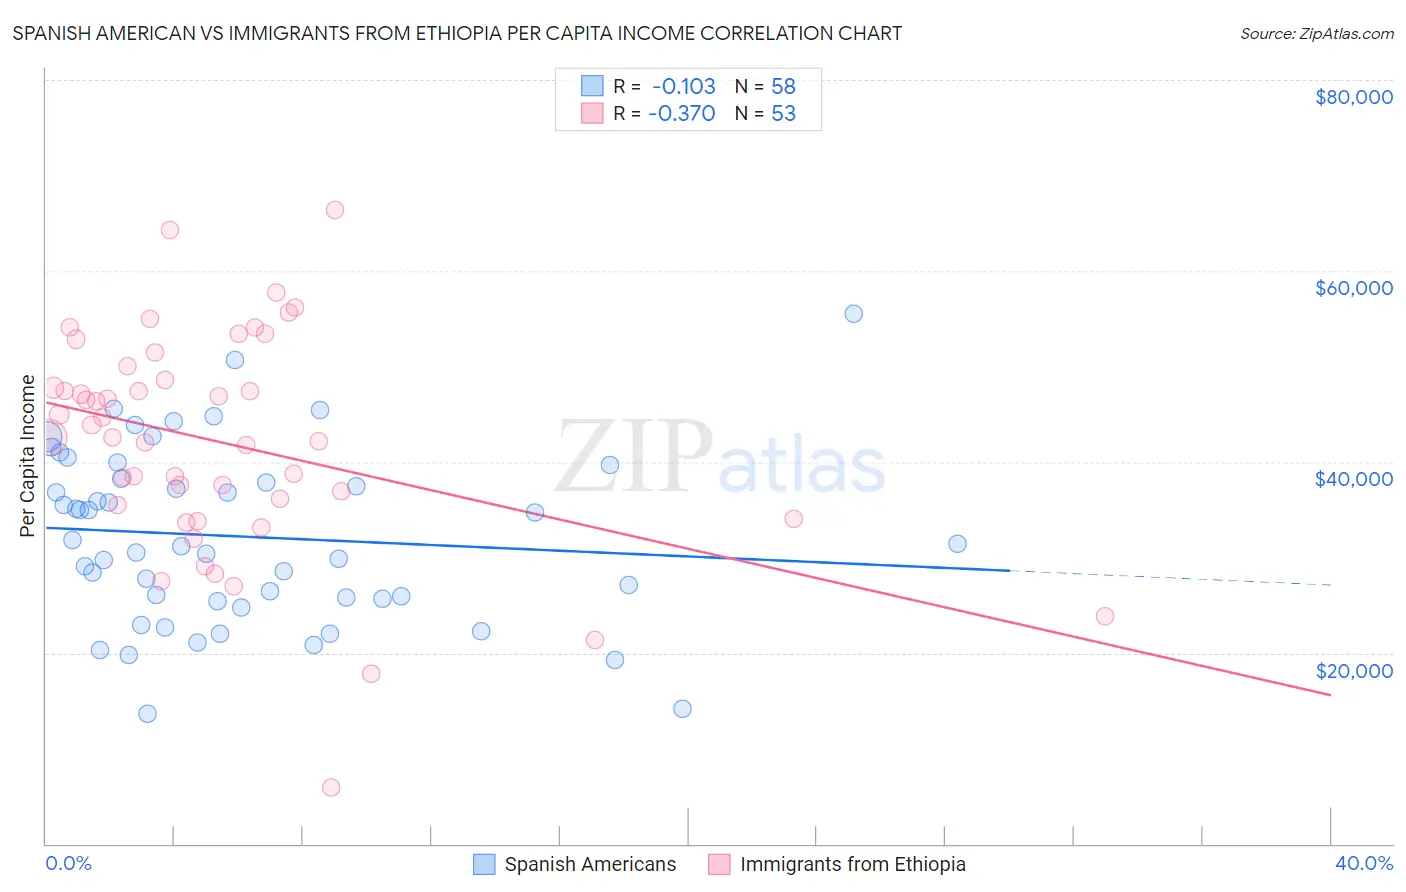 Spanish American vs Immigrants from Ethiopia Per Capita Income